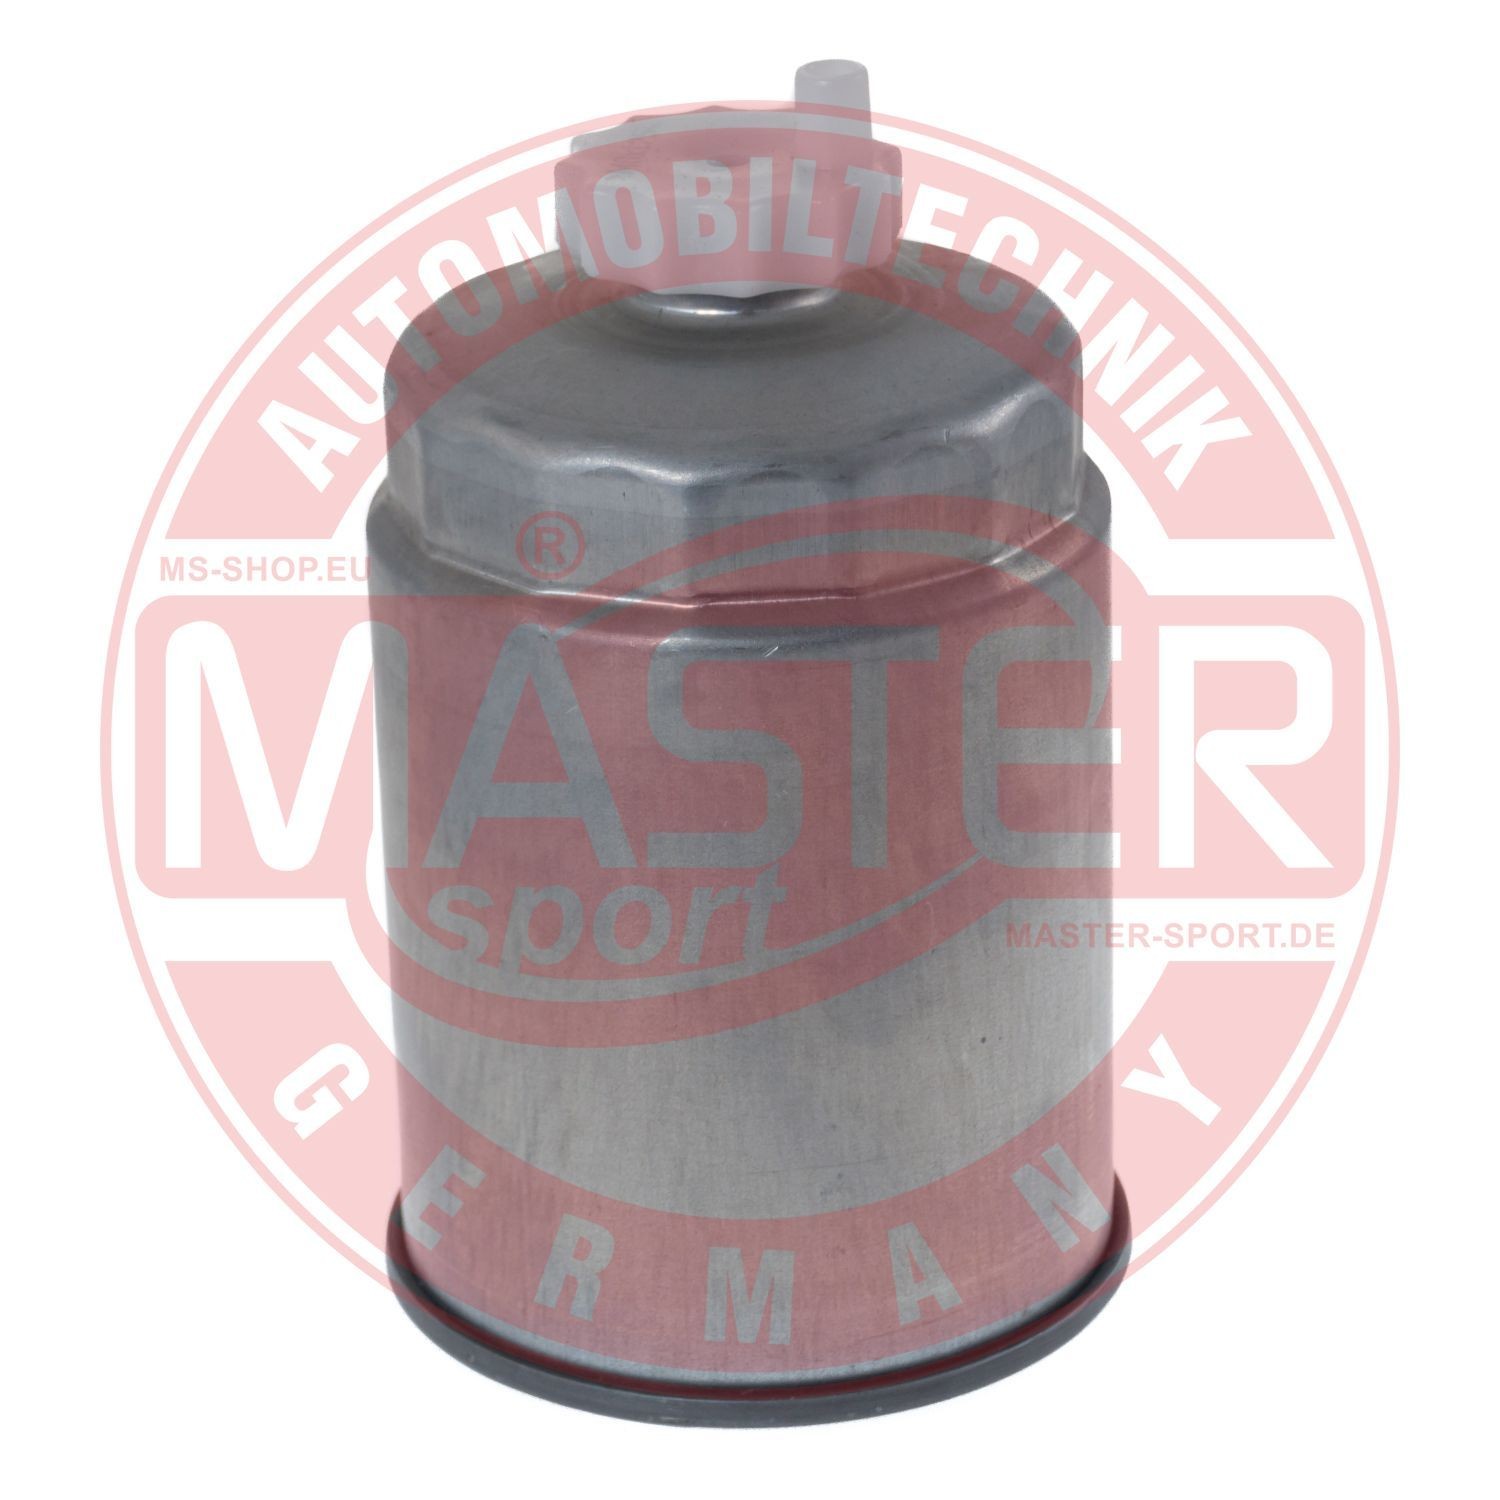 MASTER-SPORT Fuel filter 713-KF-PCS-MS